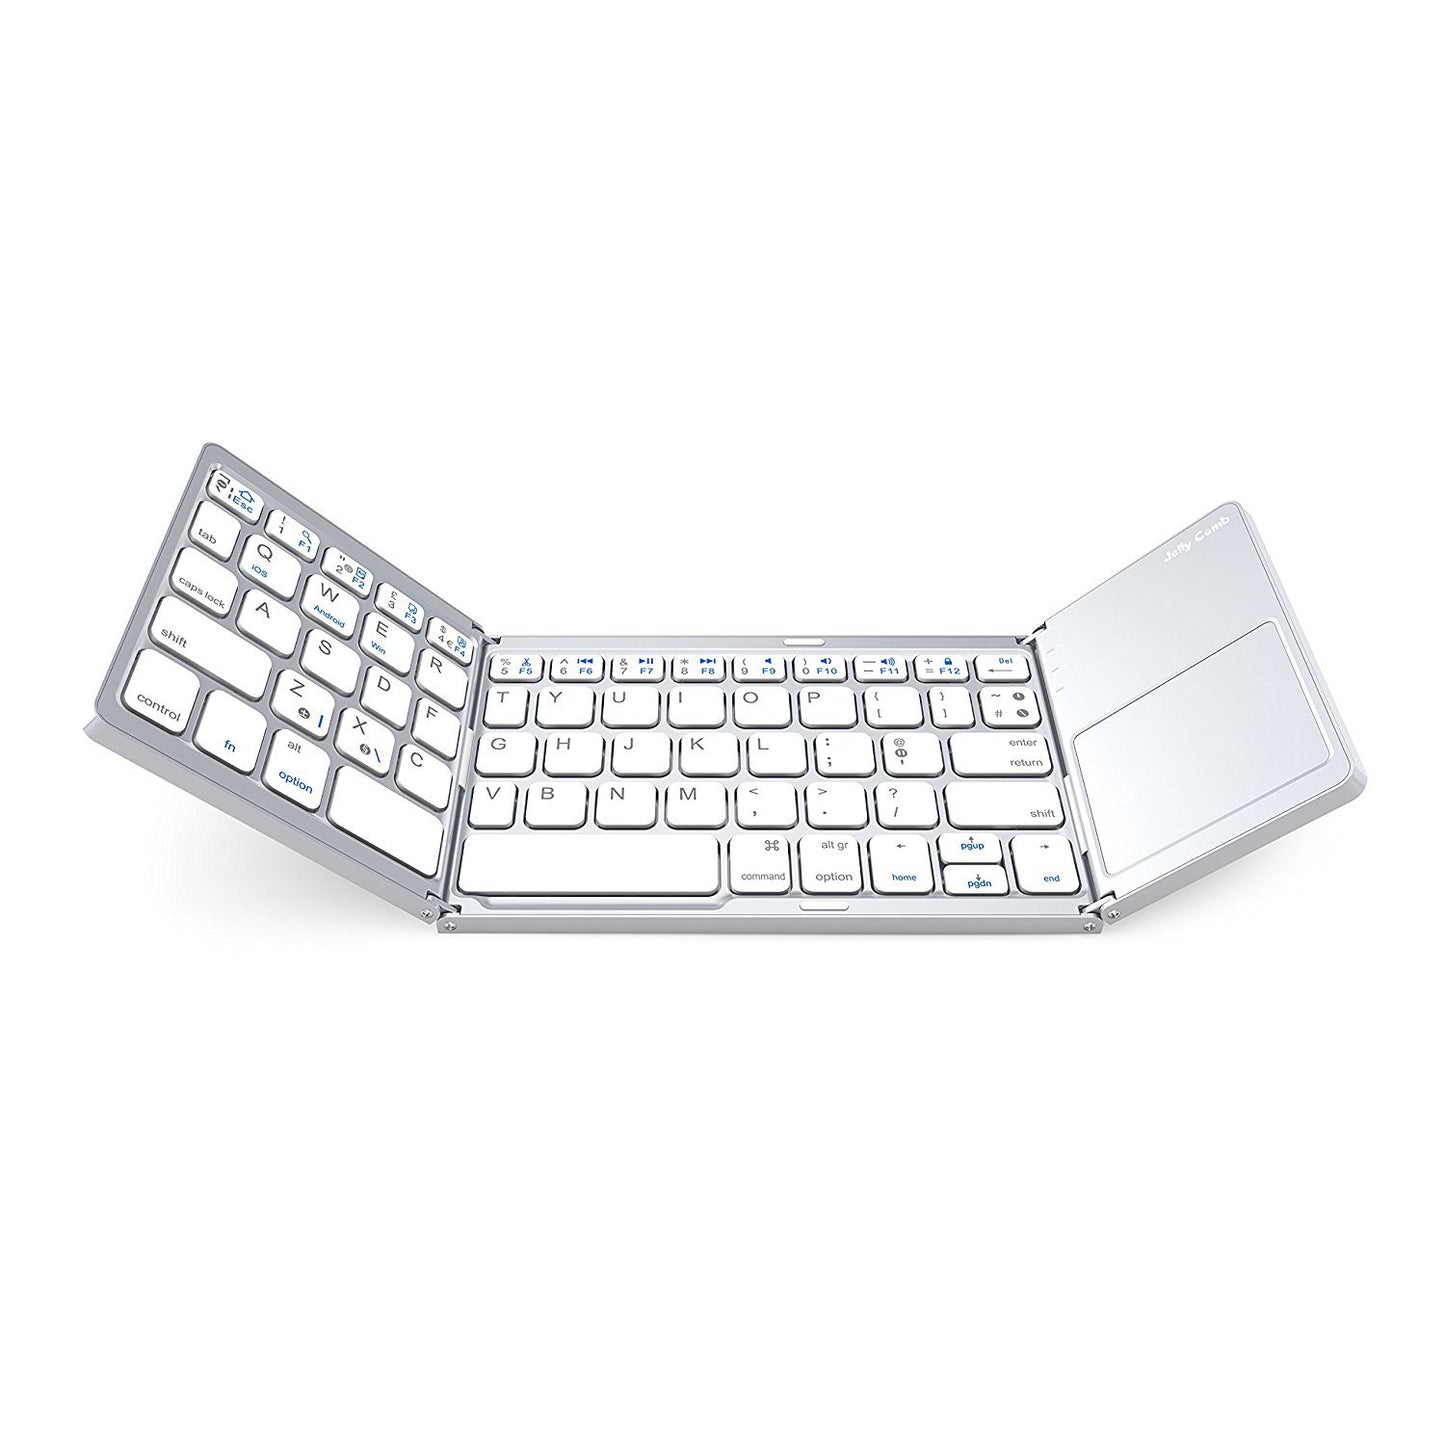 Universal three-fold mini keyboard